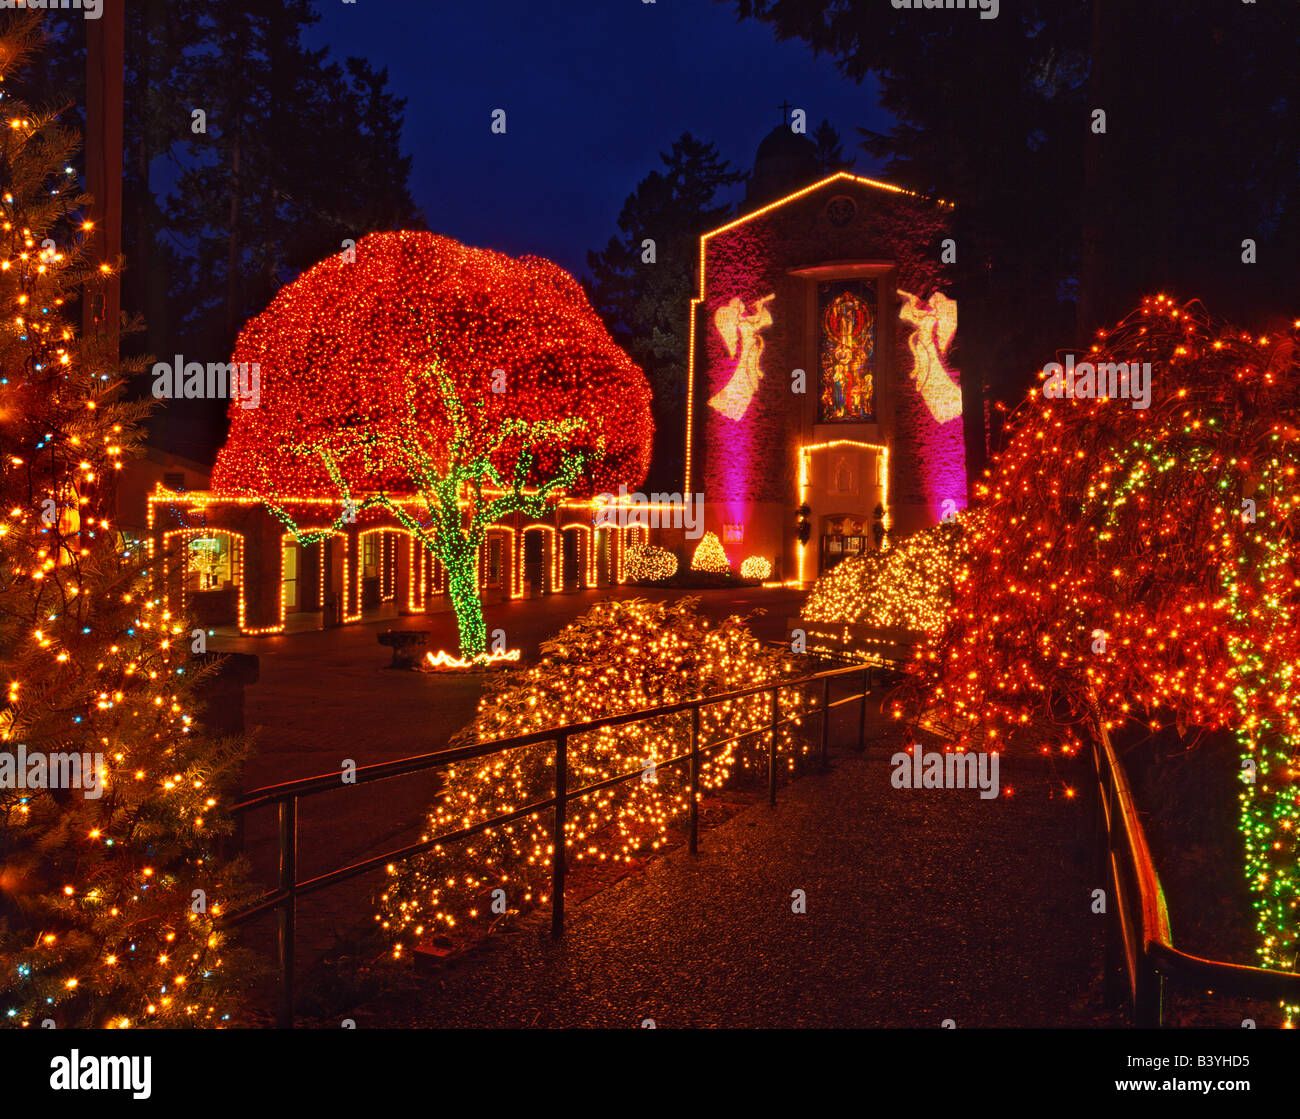 USA, Oregon, Portland. Christmas light display at The Grotto Sanctuary